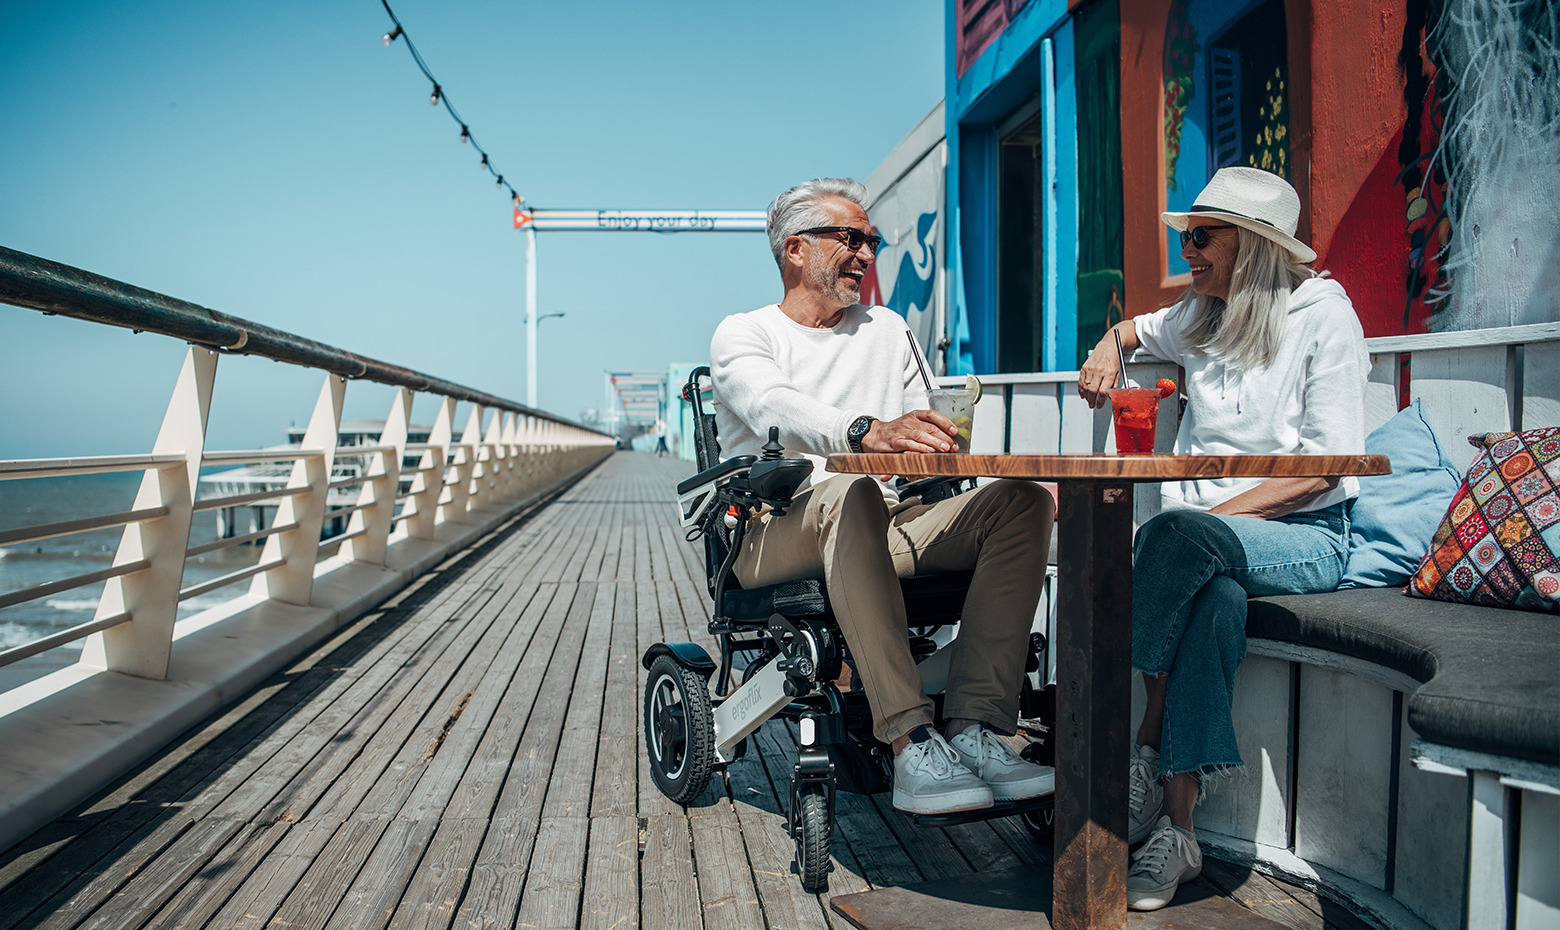 Dieses Bild zeigt einen Mann in einem faltbaren E-Rollstuhl, der in einem Restaurant am Meer sitzt